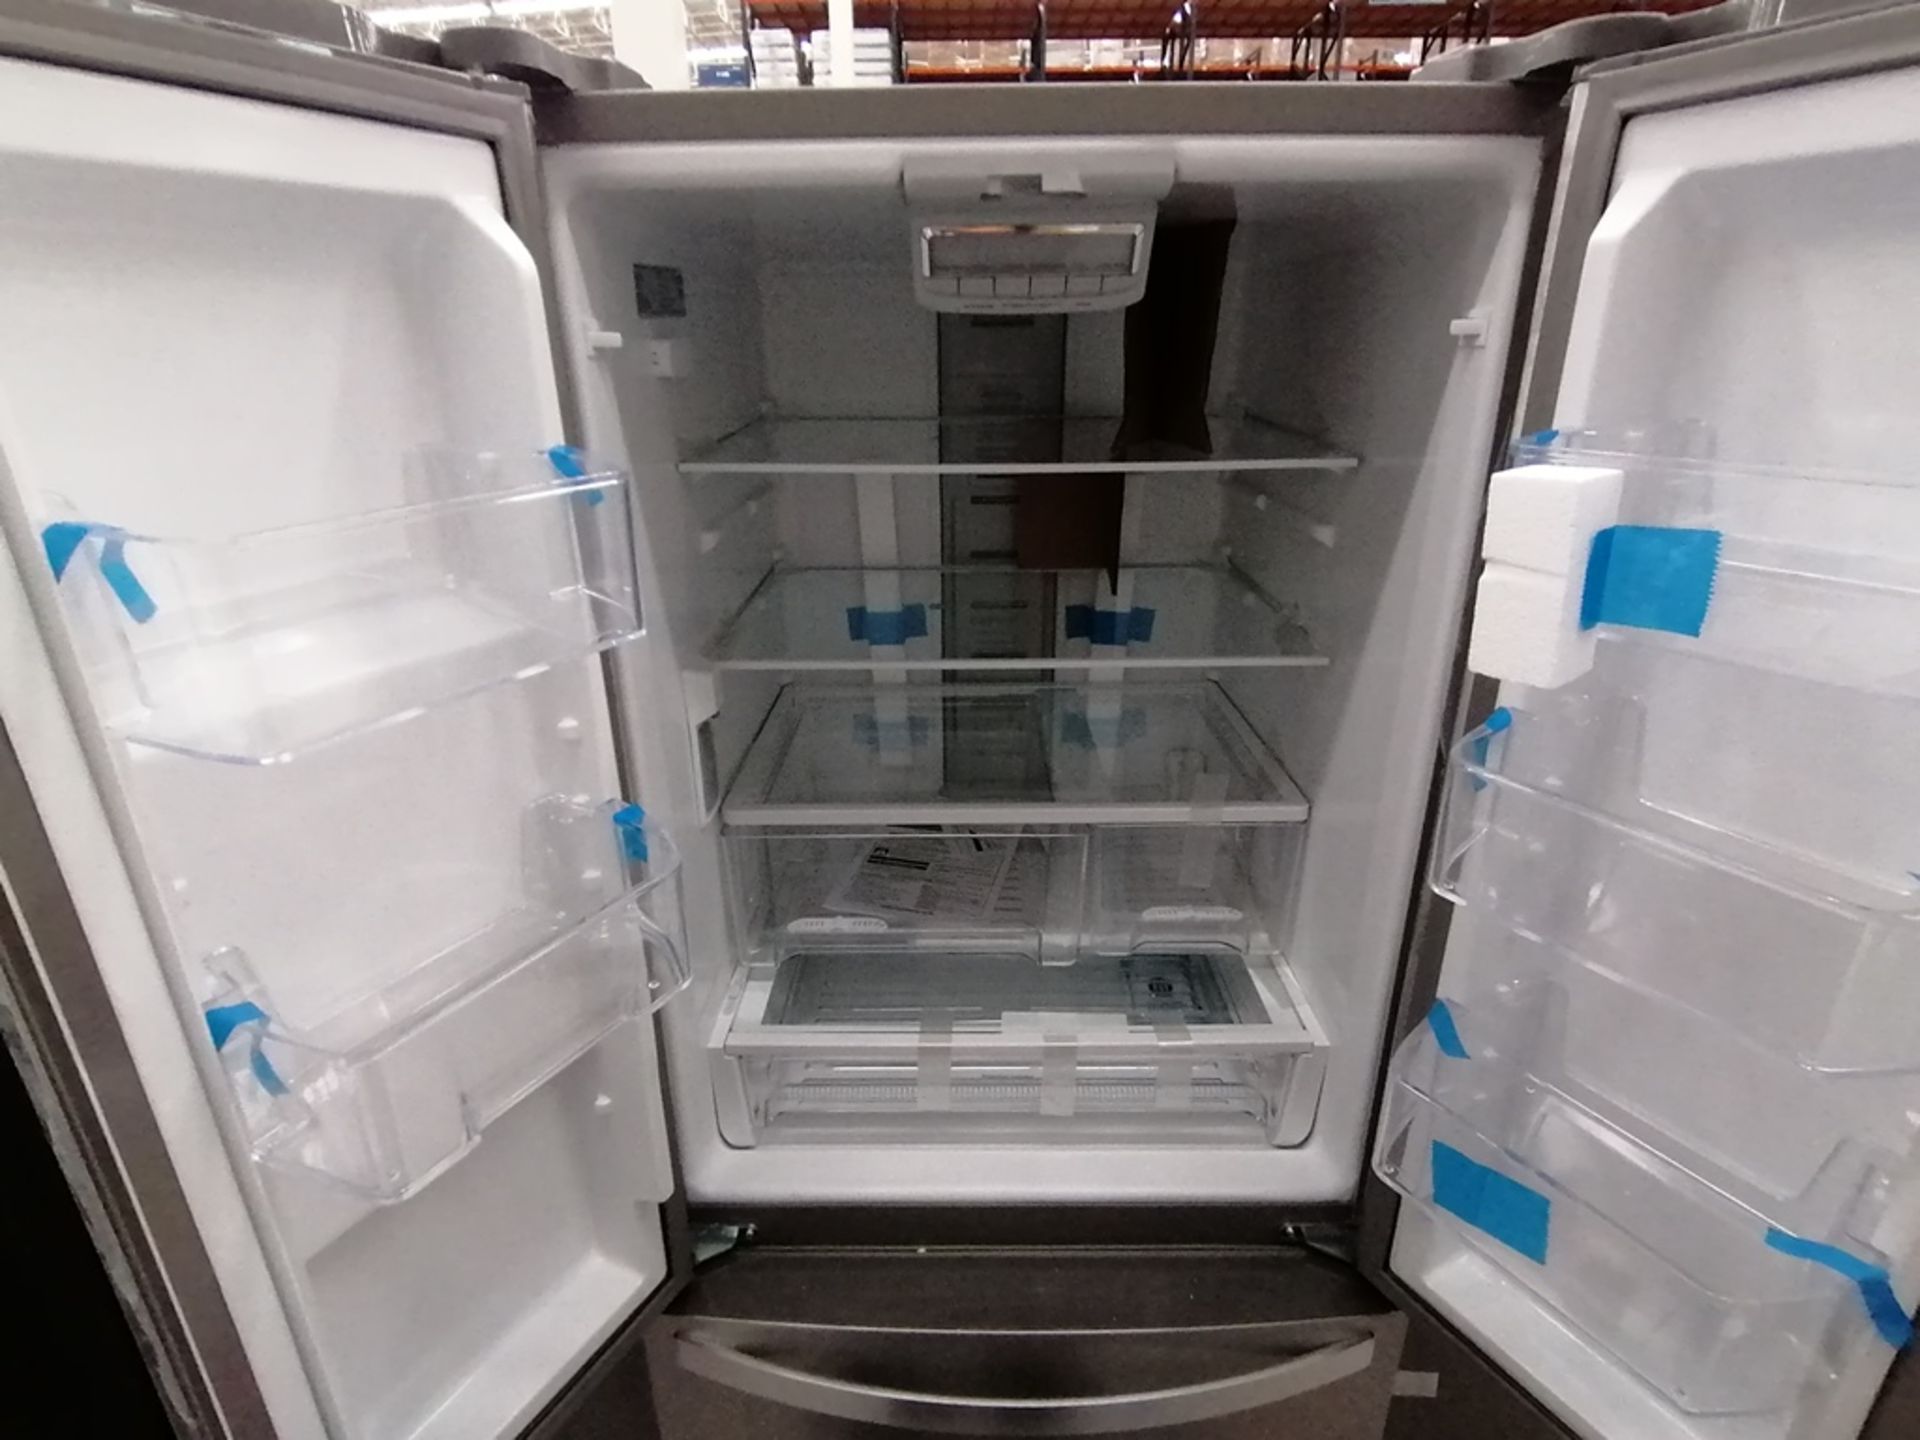 Lote de 2 refrigeradores incluye: 1 Refrigerador, Marca Mabe, Modelo RMA1025VMX, Serie 2111B618024, - Image 13 of 15